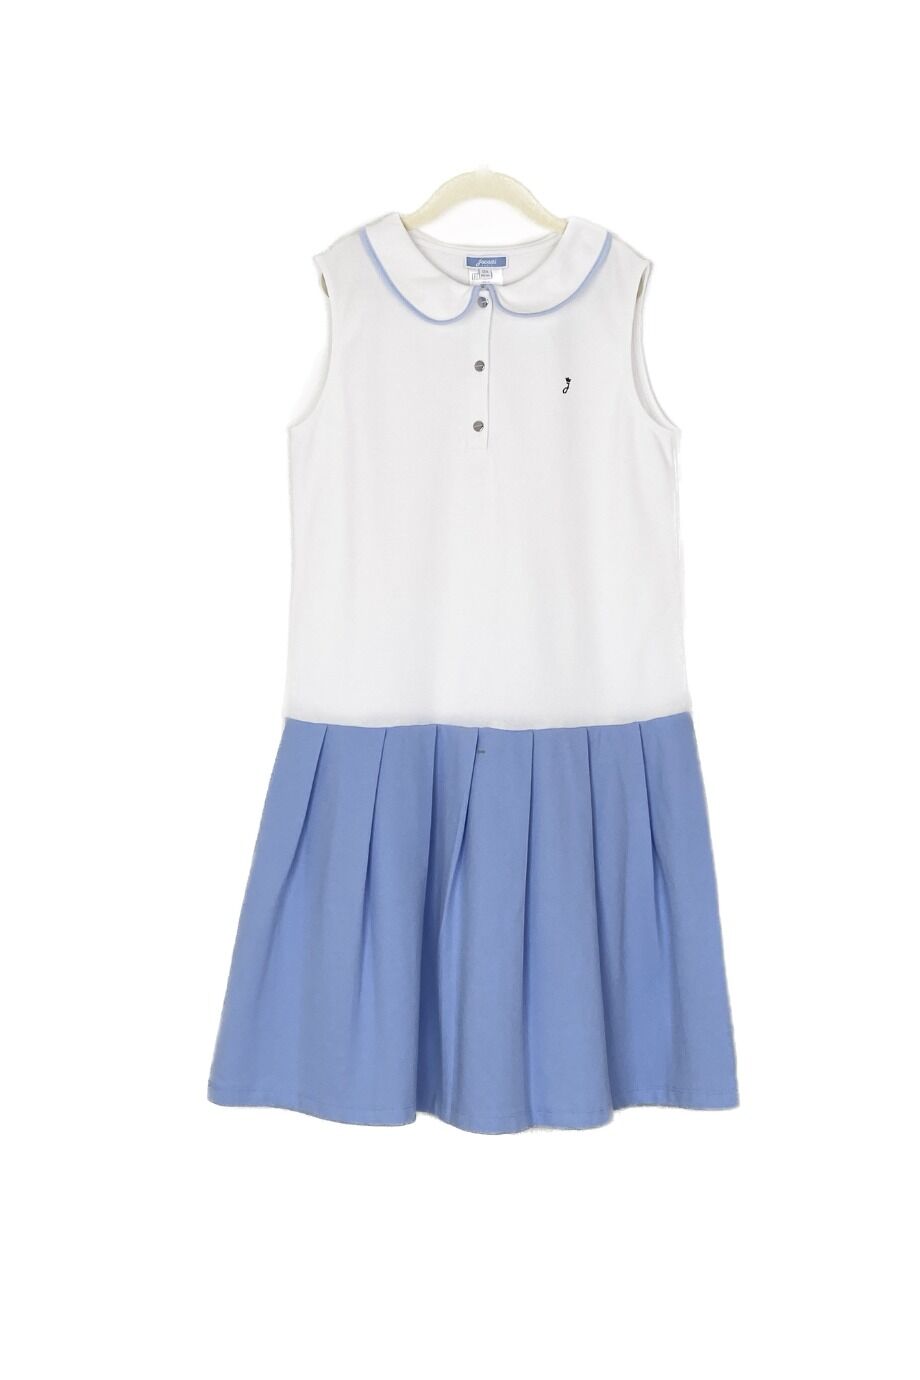 image 1 Детское платье поло белого цвета с голубой юбкой